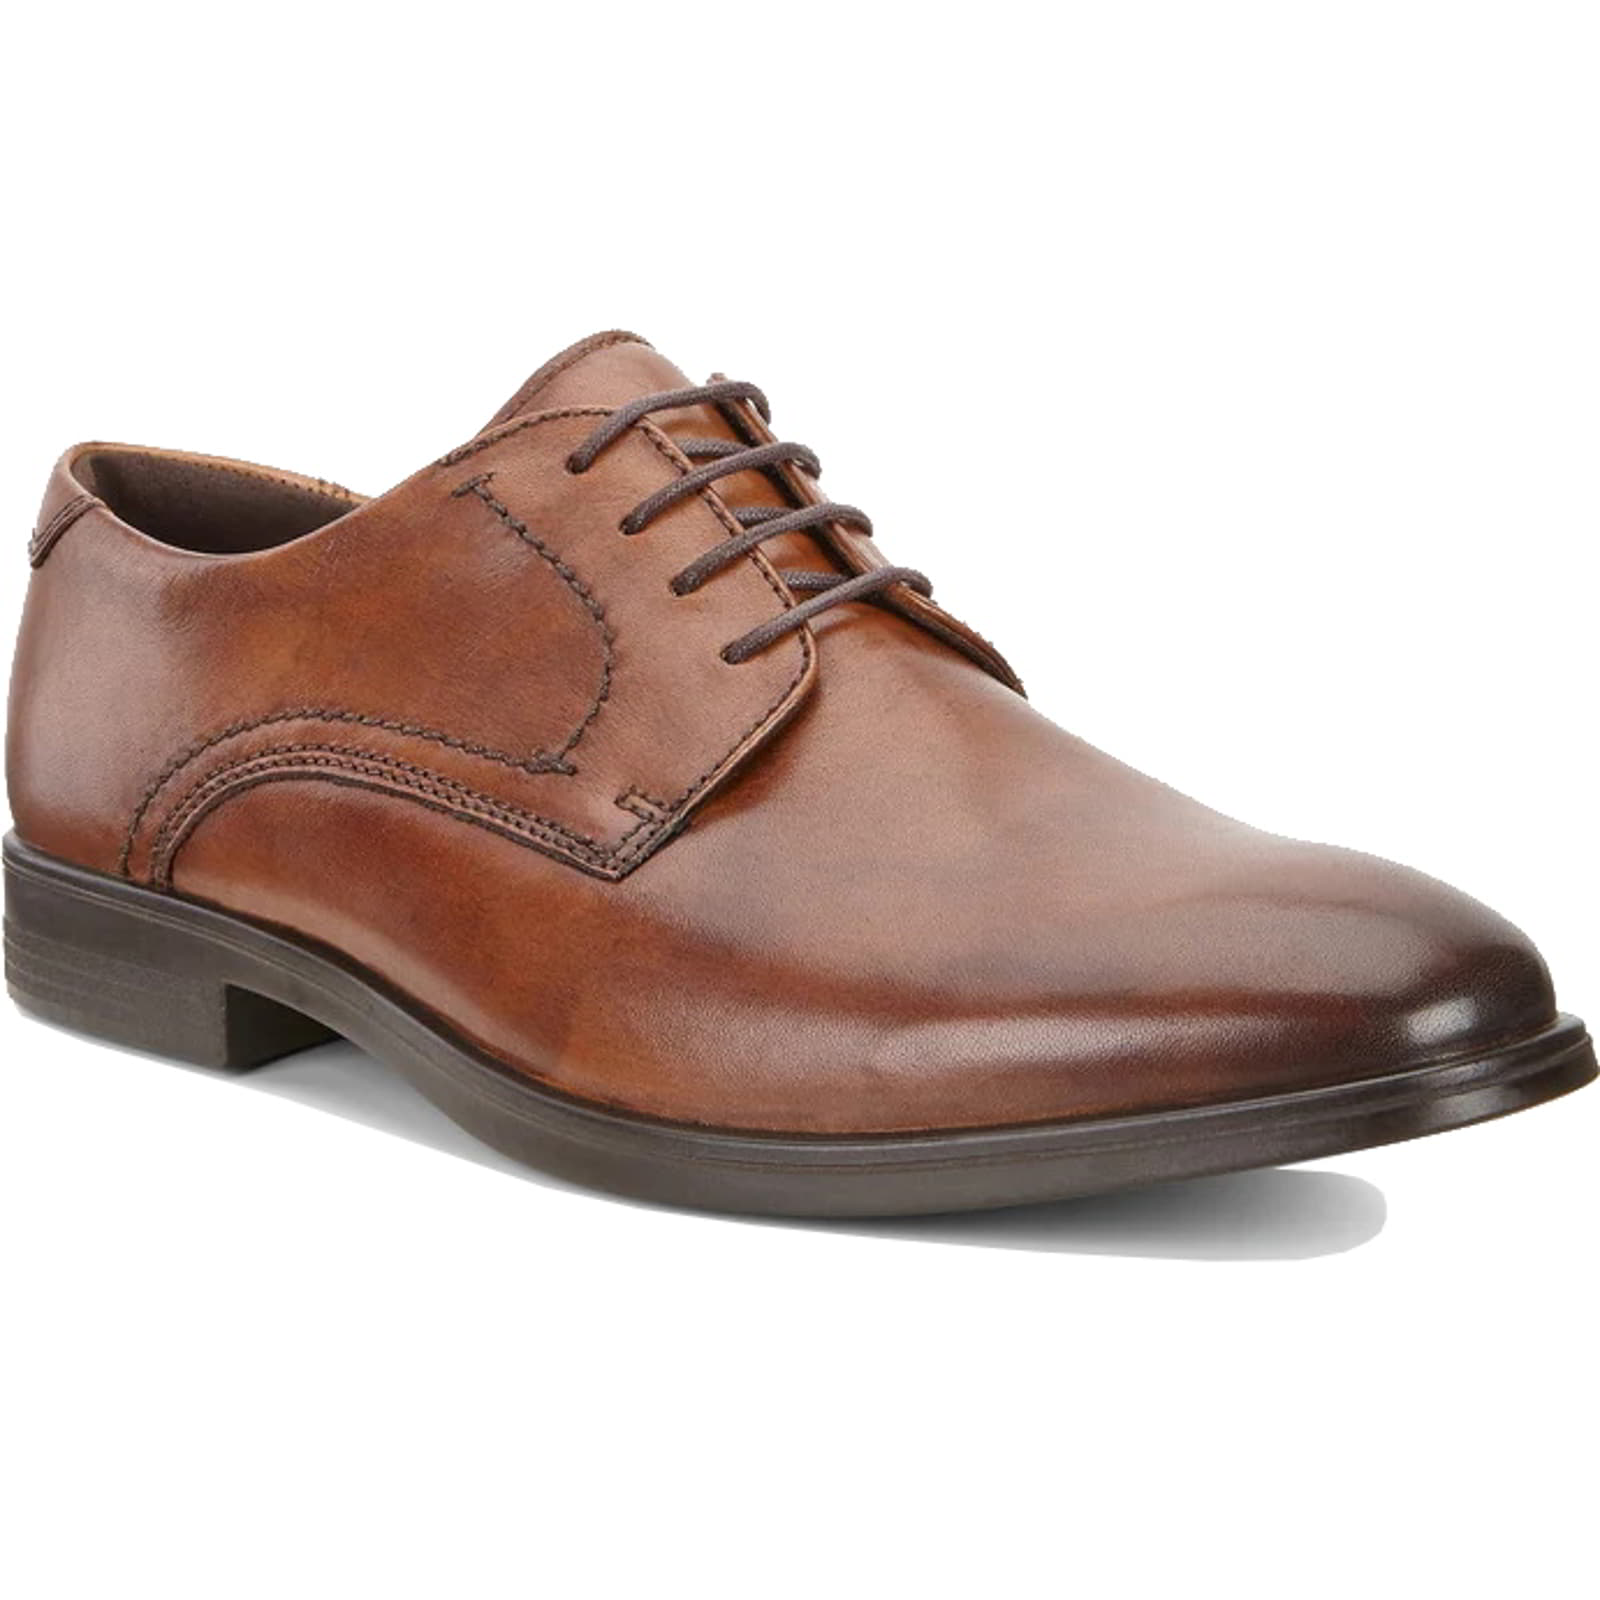 Ecco Melbourne Men's Shoes | Leather Derby Shoes Oxford Shoes - UK 10 / EU 44